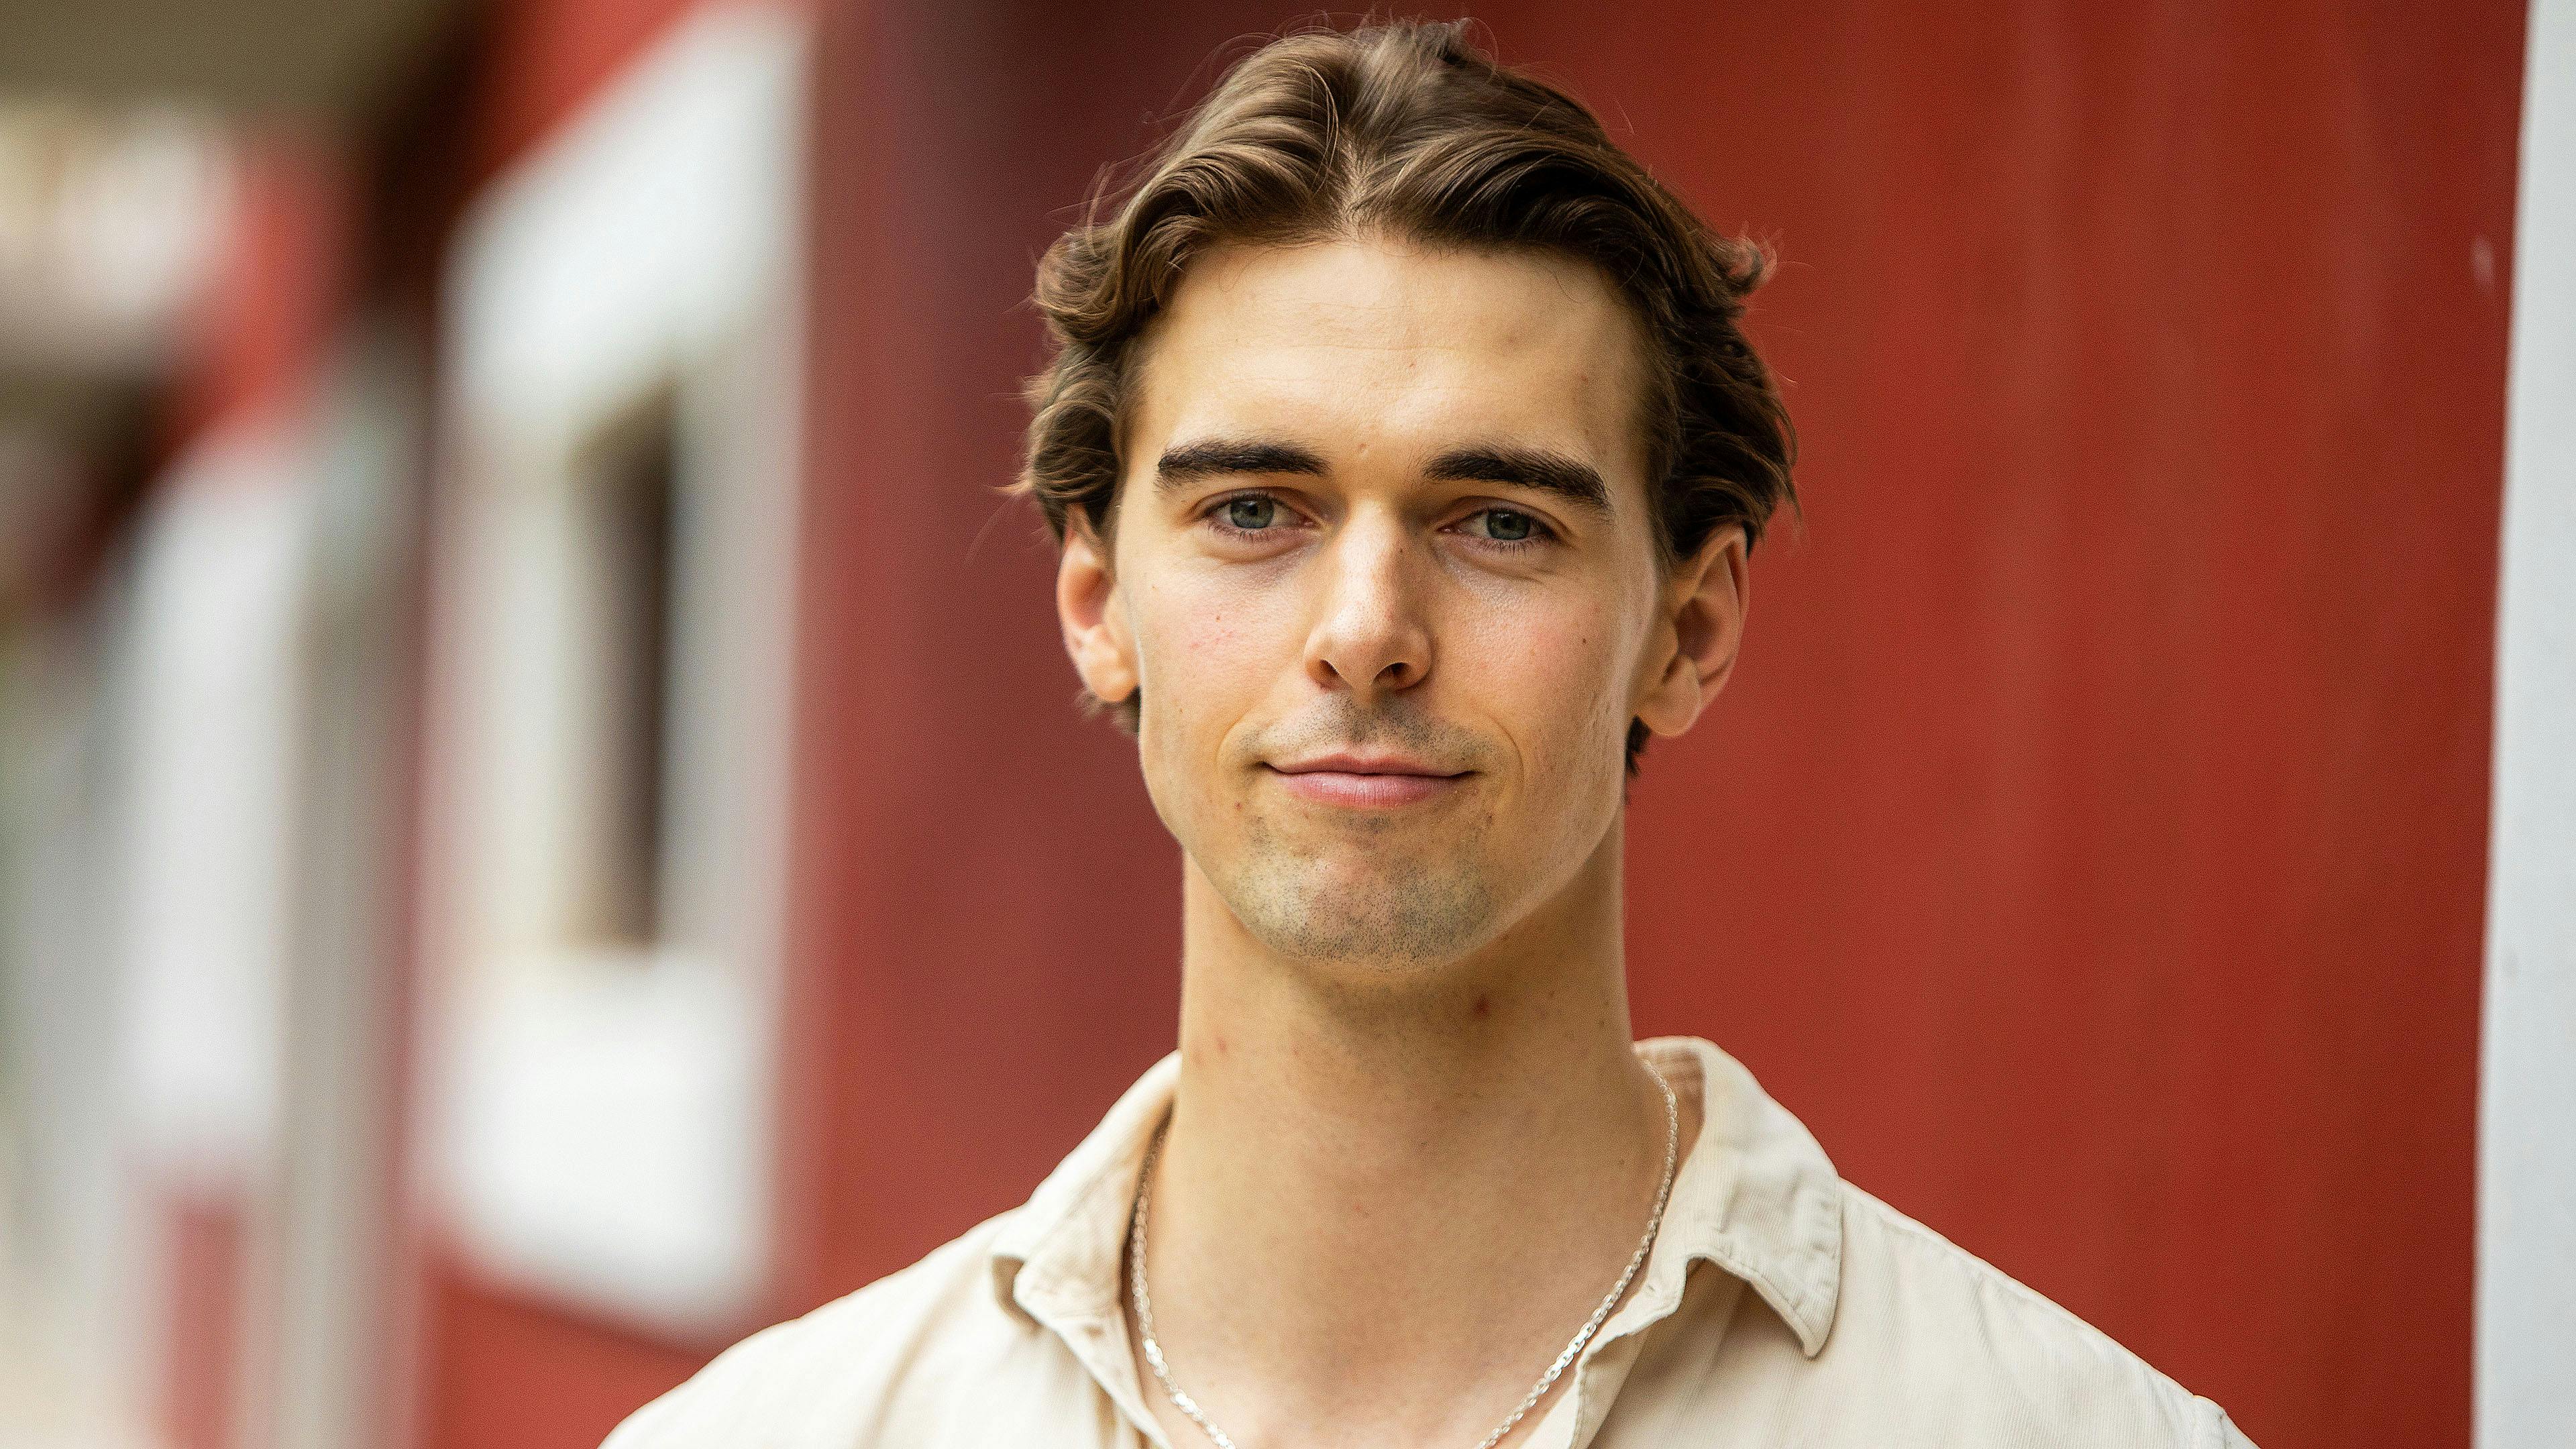 Adam, 24 år, København, single i to år, CBS-studerende.